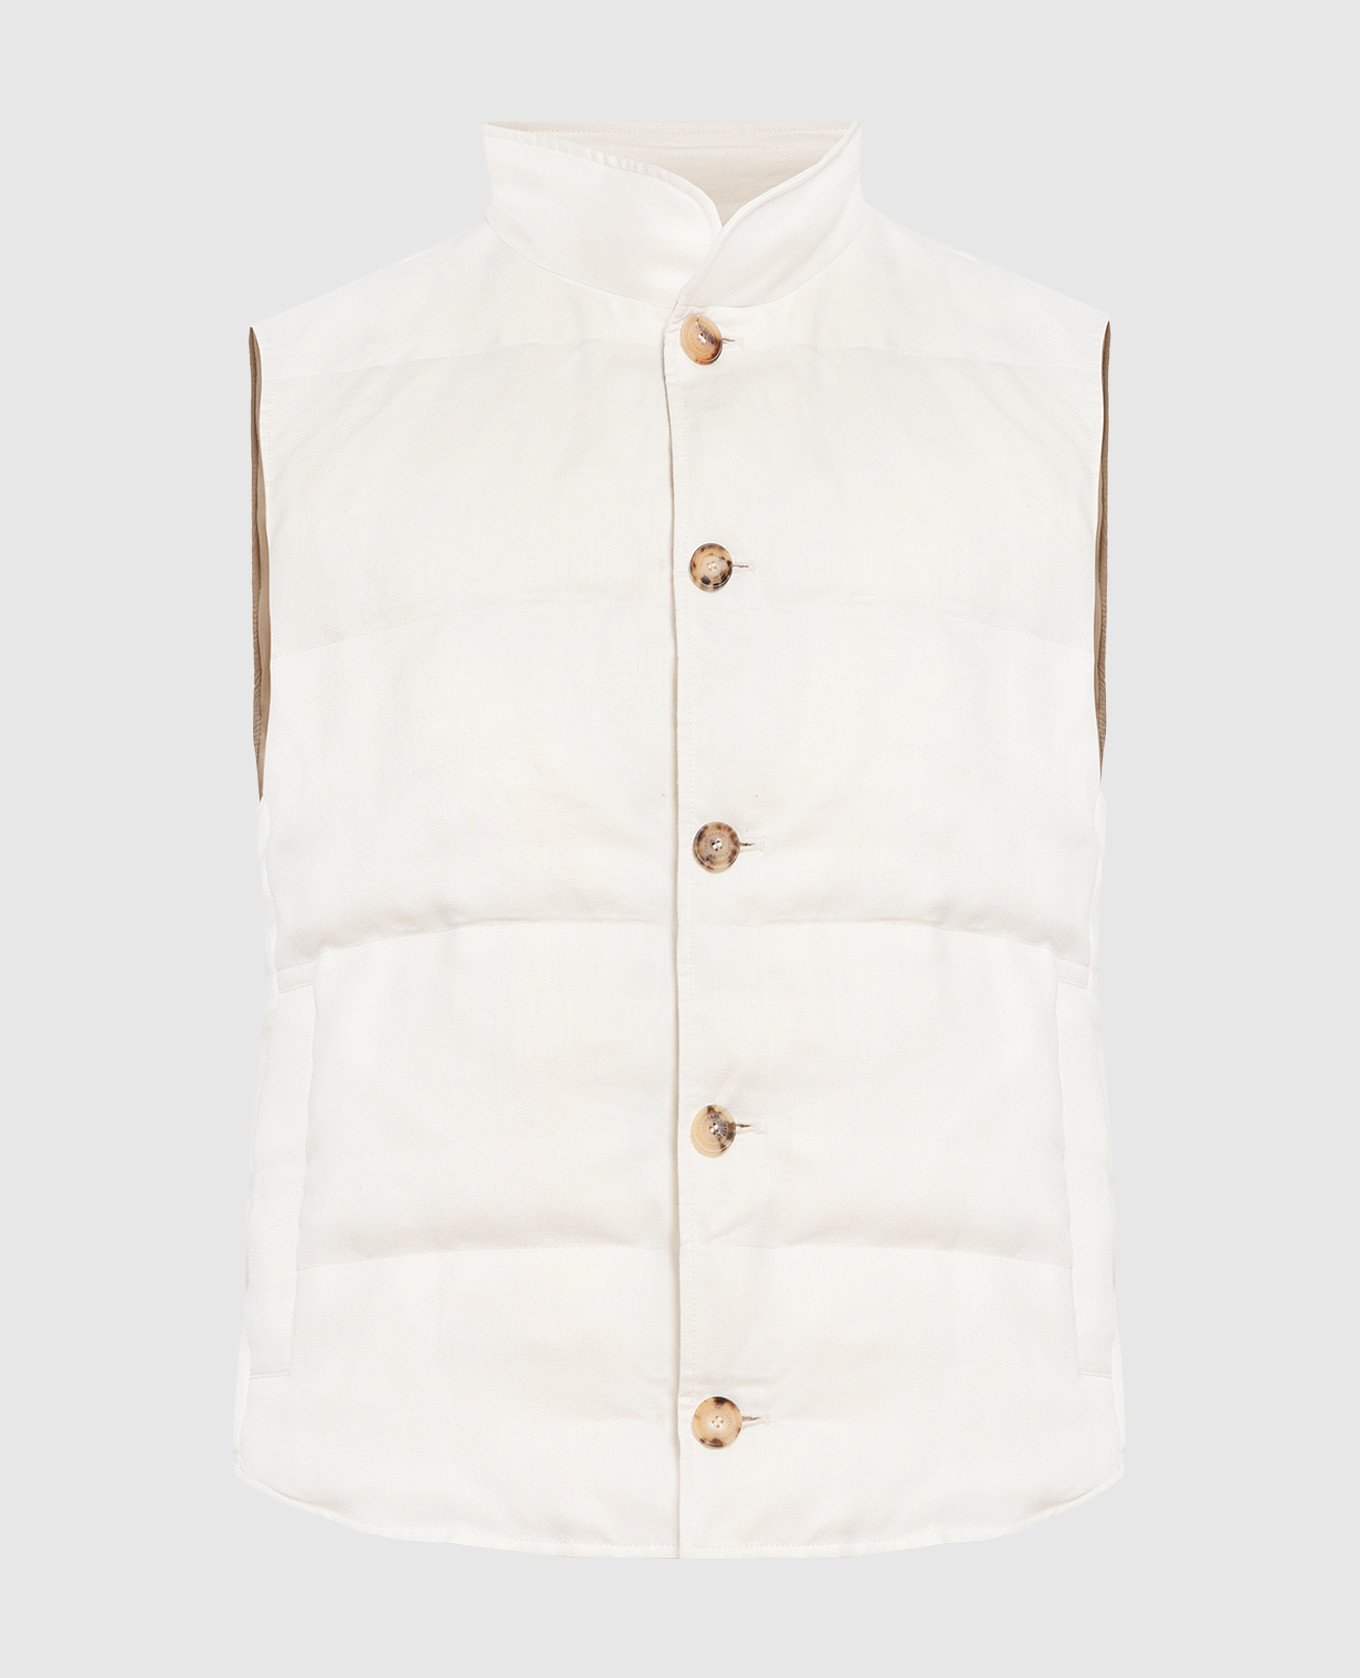 White down vest made of linen